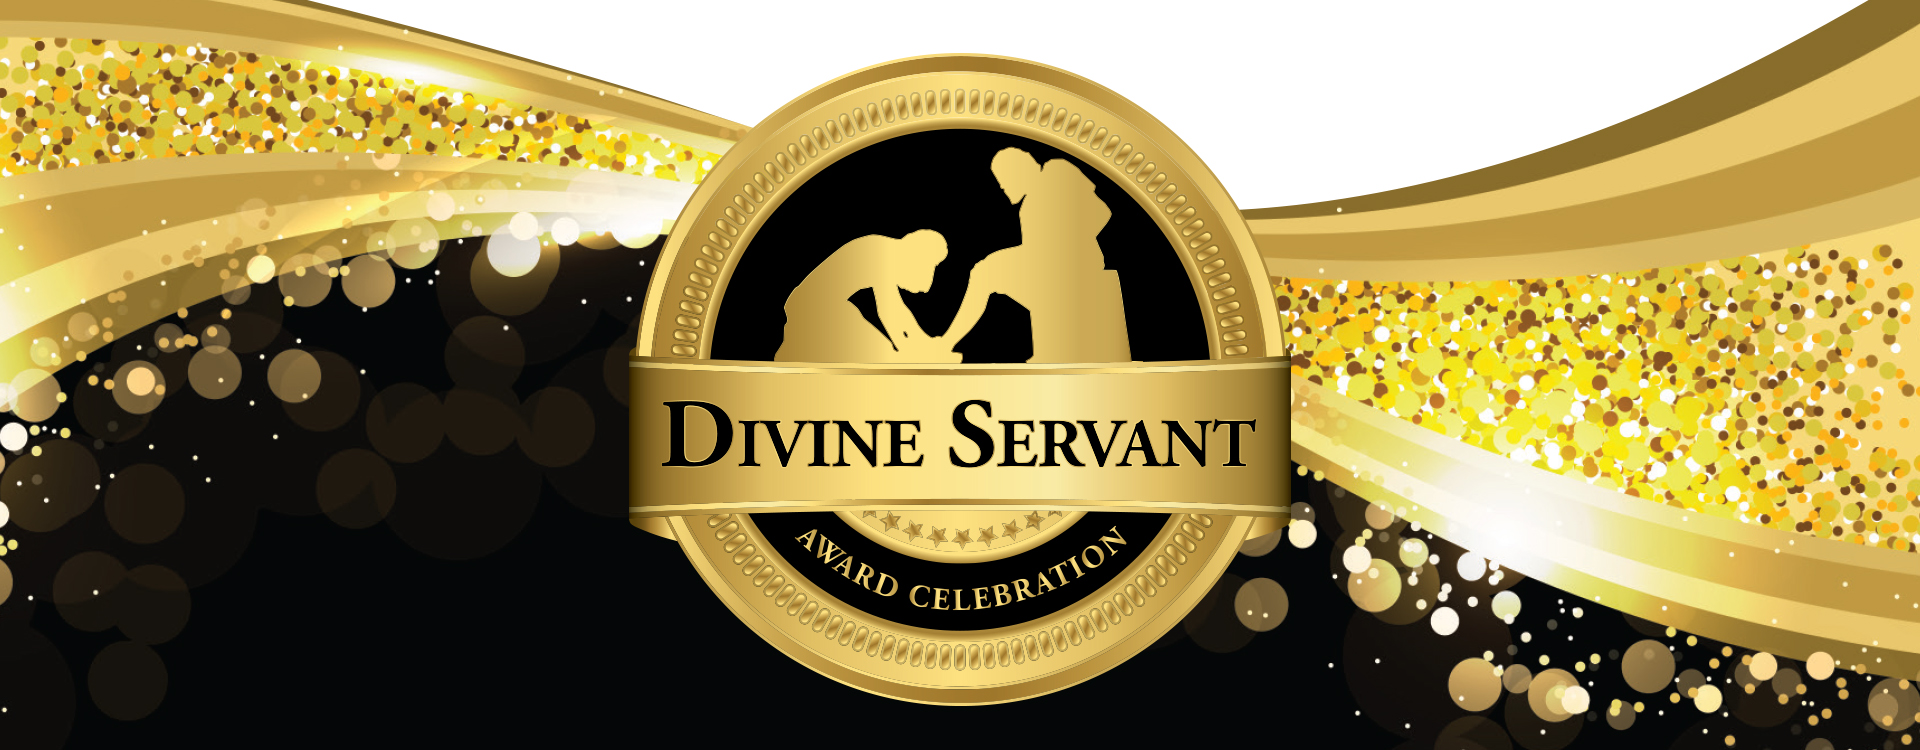 Divine Servant Award logo artwork